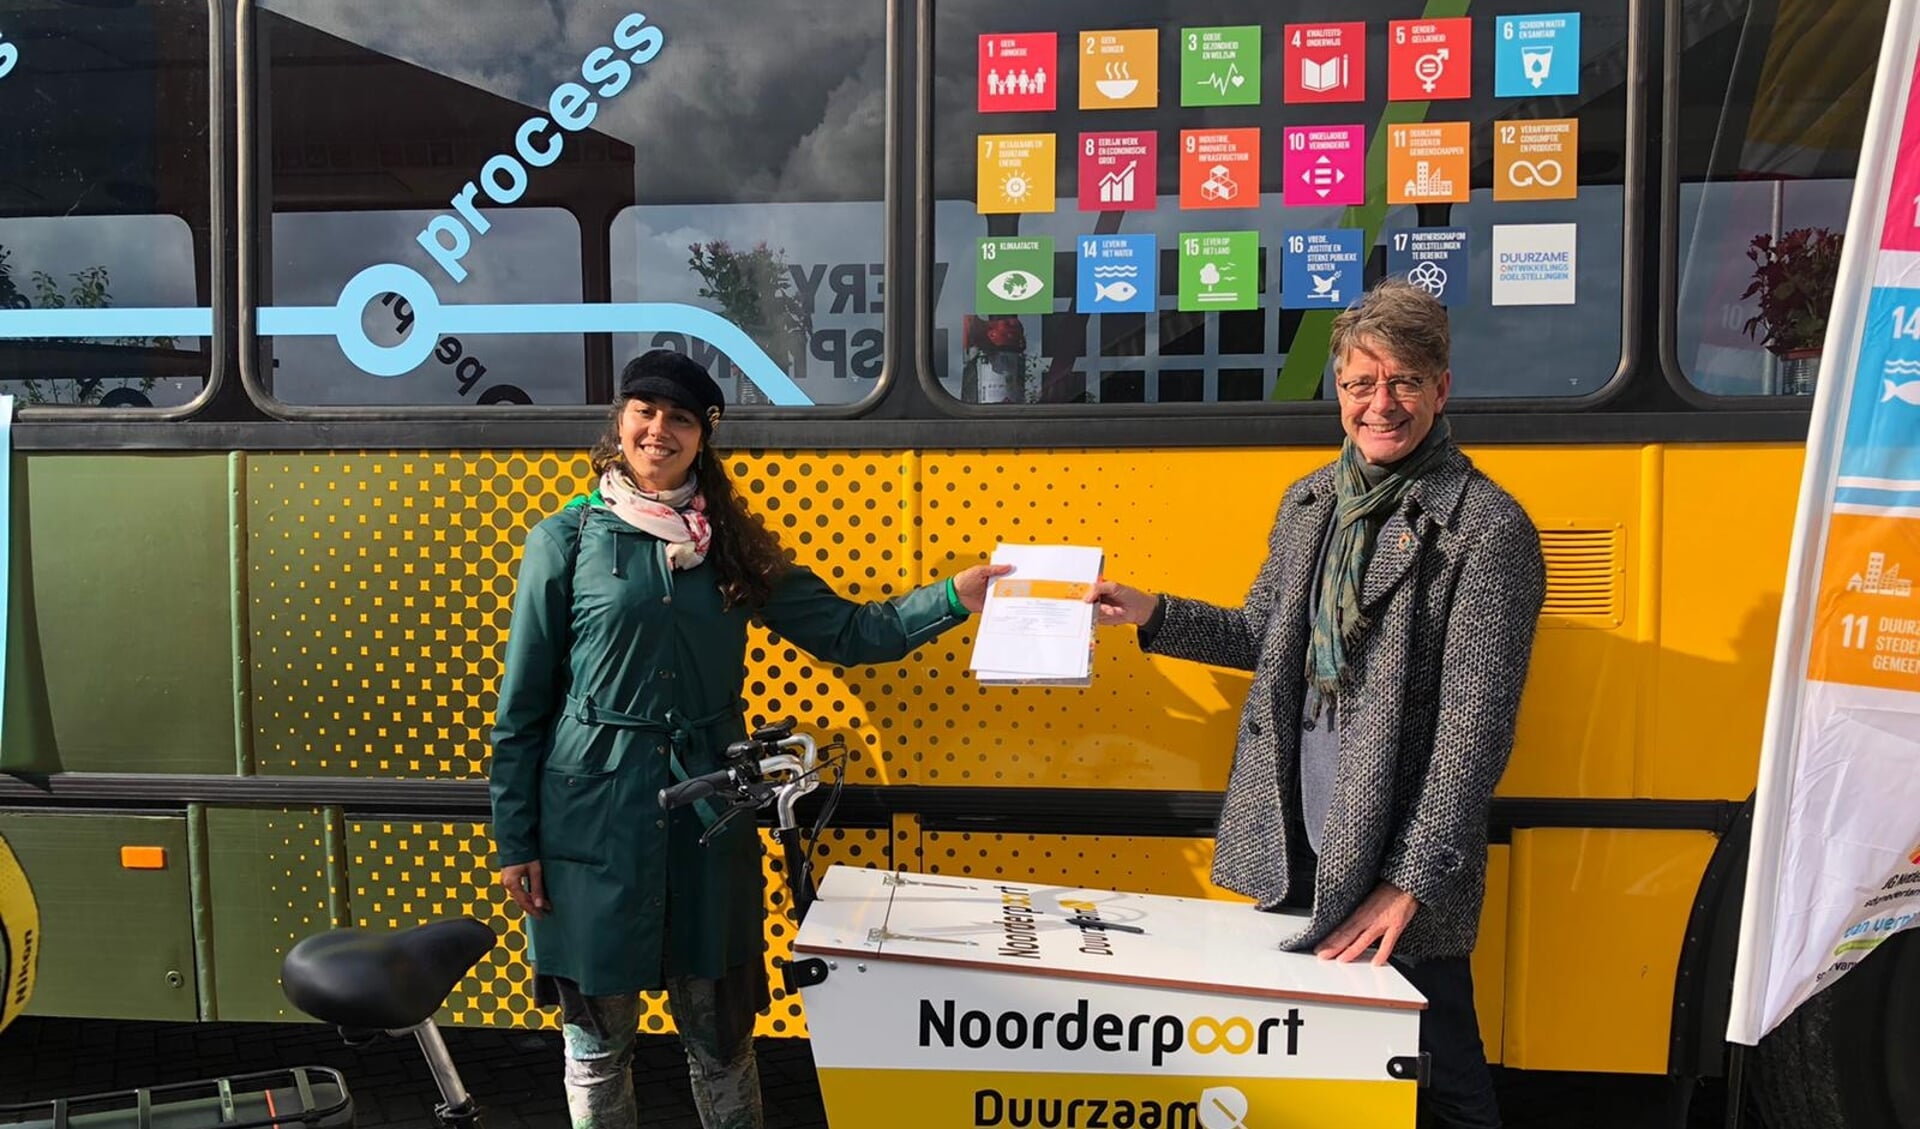 Bestuursvoorzitter Wim van de Pol tekende eerder namens Noorderpoort de SDG charter van de Verenigde Naties. (eigen foto)